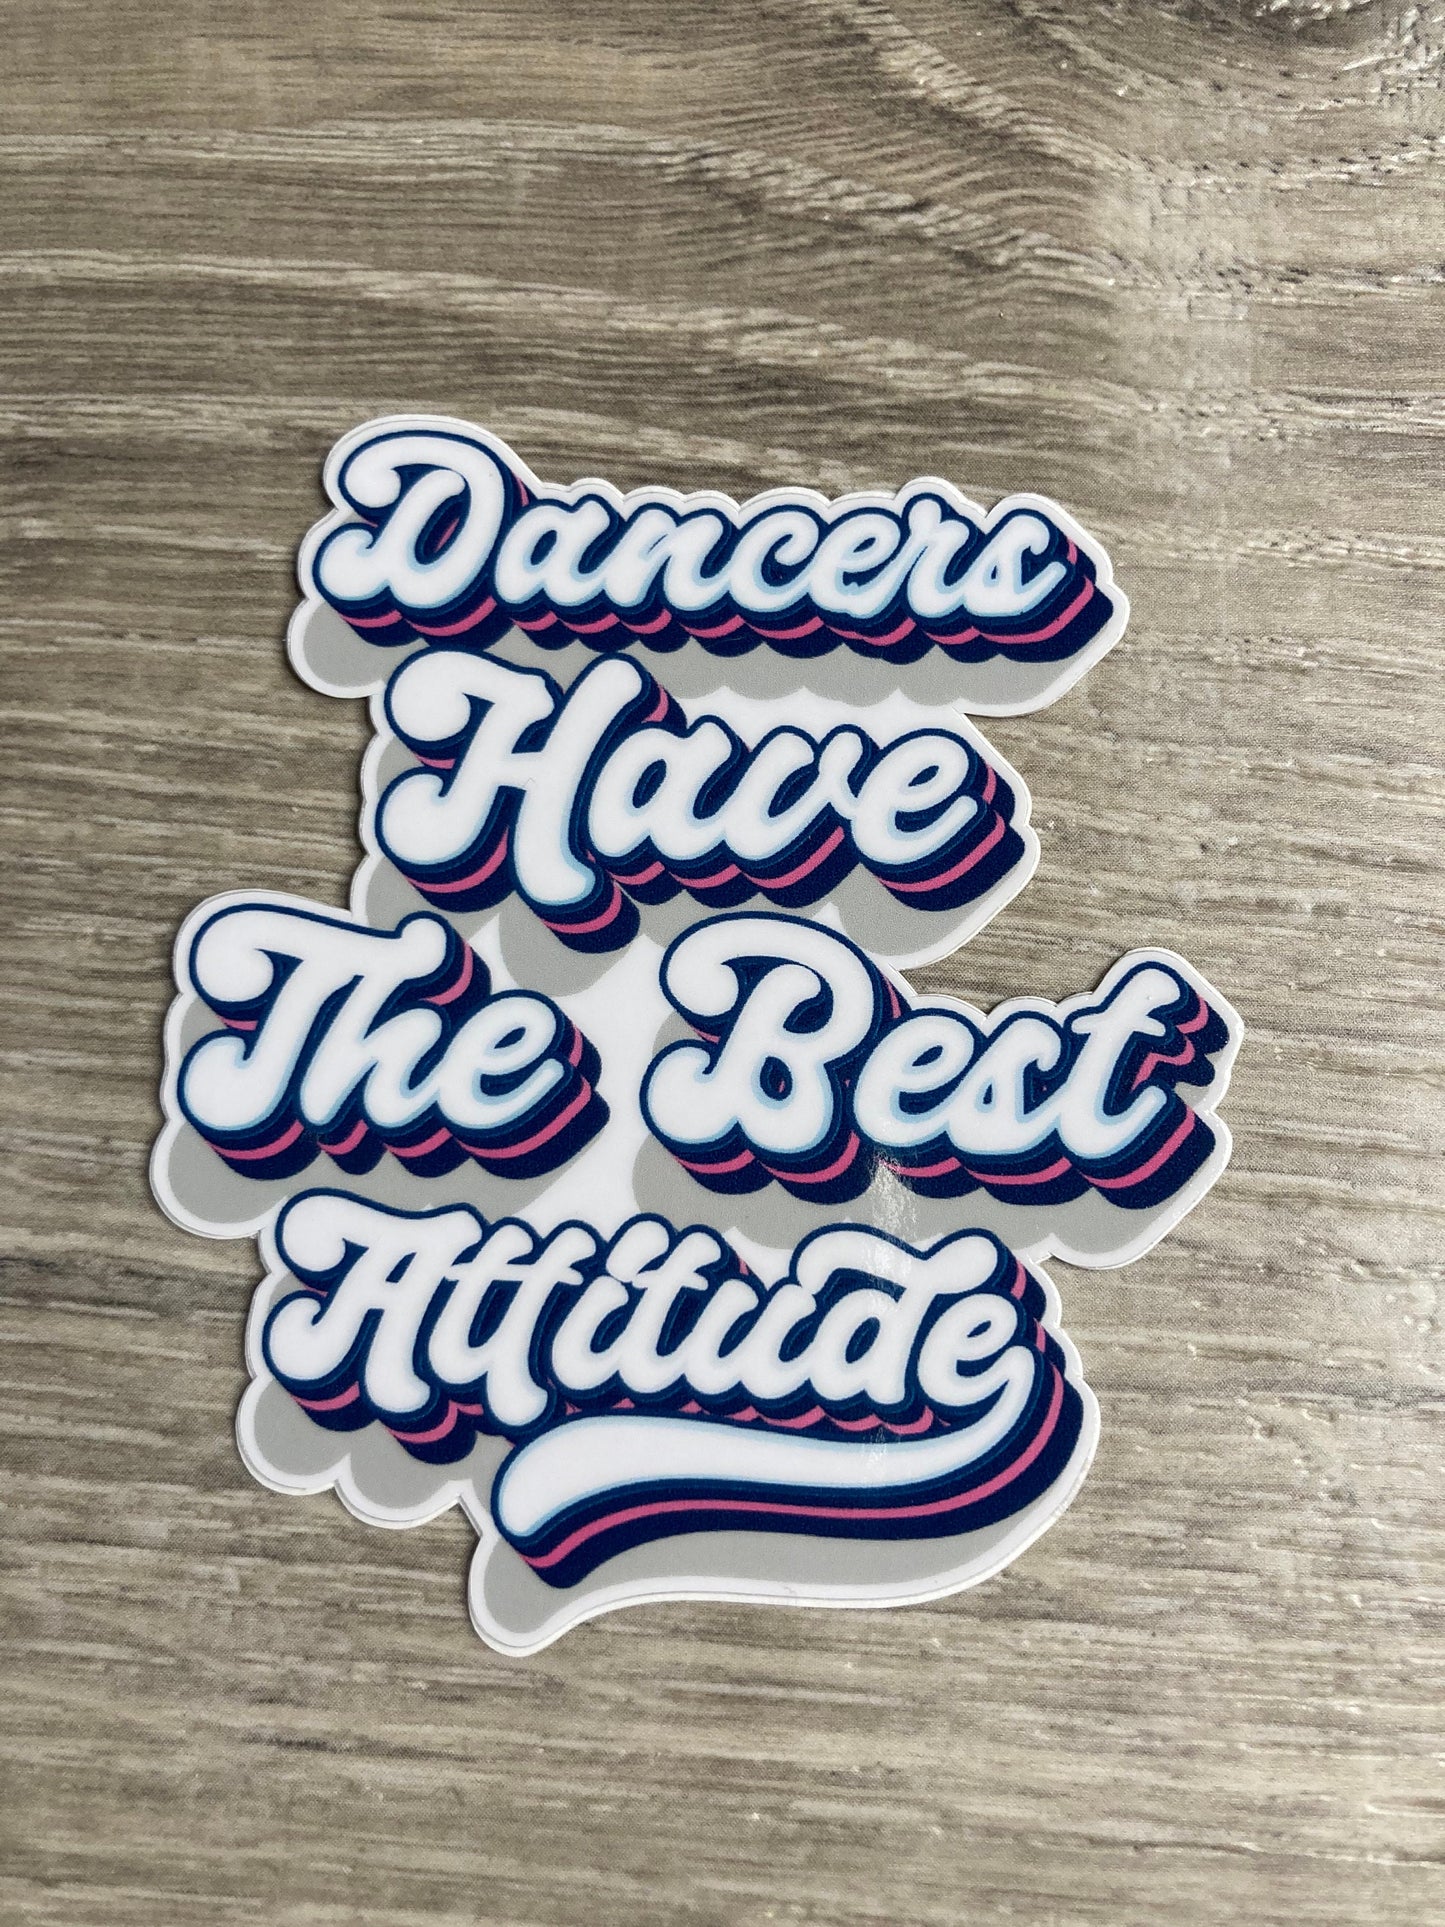 Dancers Have the Best Attitude Vintage Vinyl Sticker, Vinyl Decal, Laptop Sticker, Dance Sticker, Gifts For Dancers,